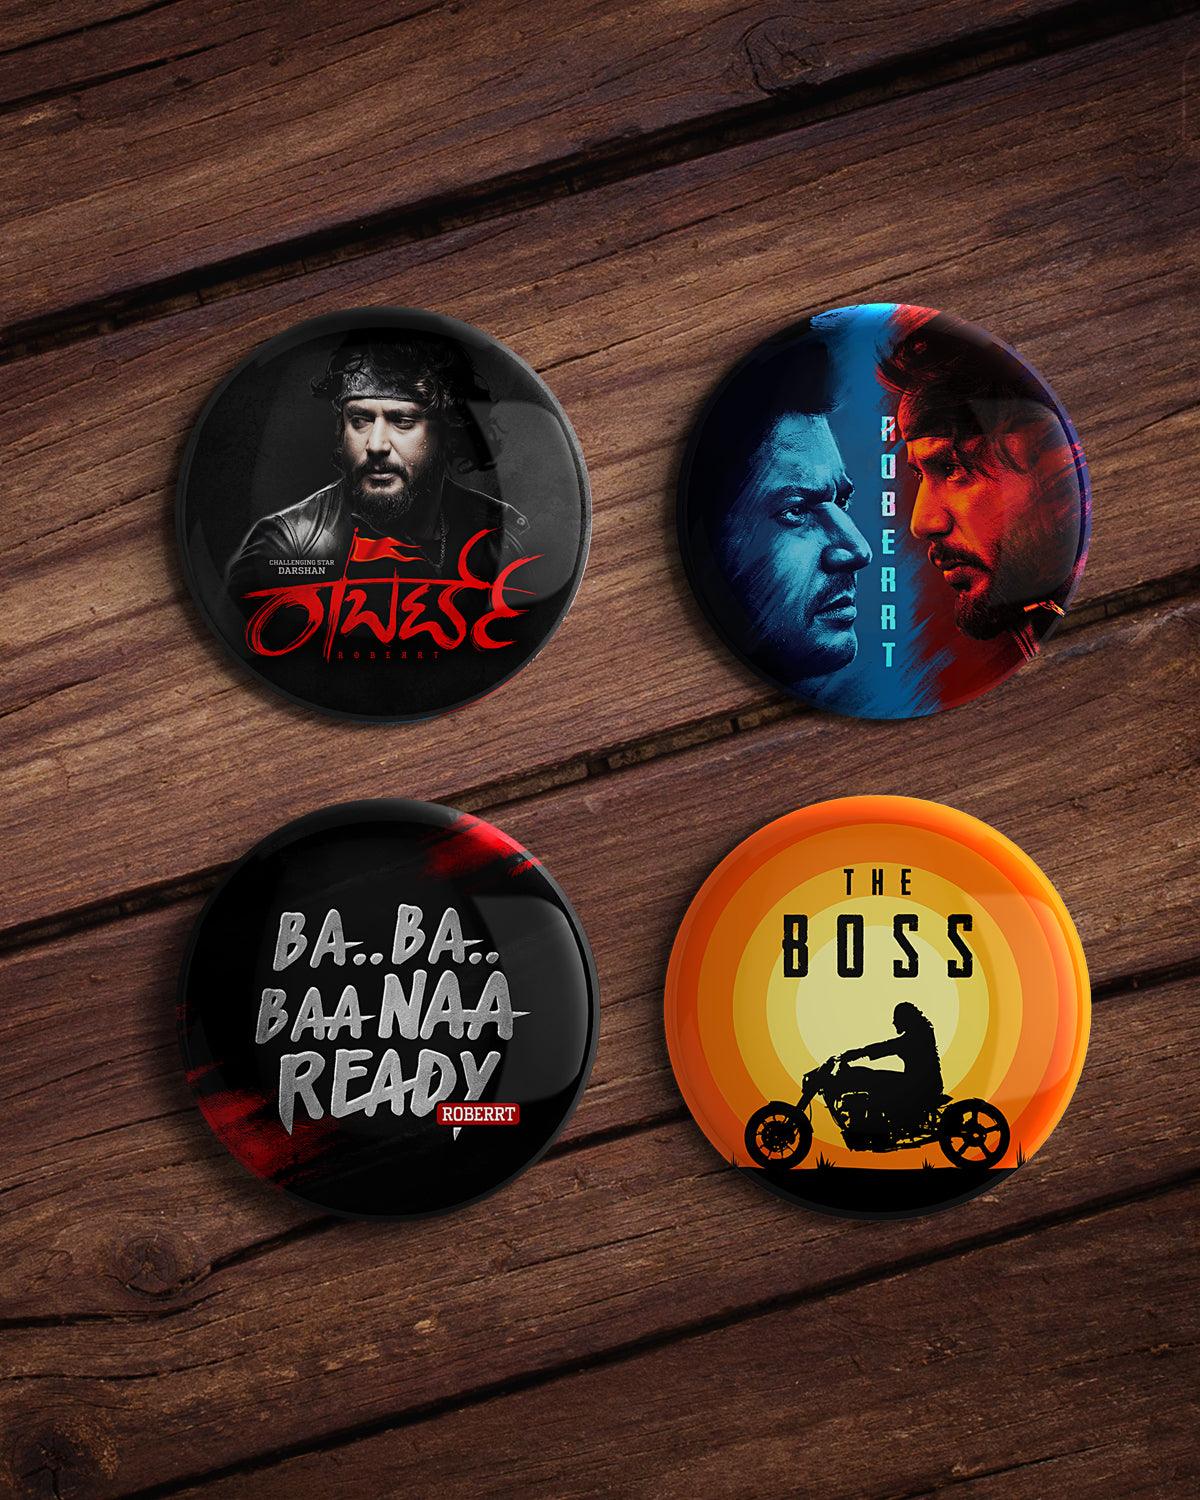 Roberrt Movie Badges - Pack of 4 - TagMyTee - Badges